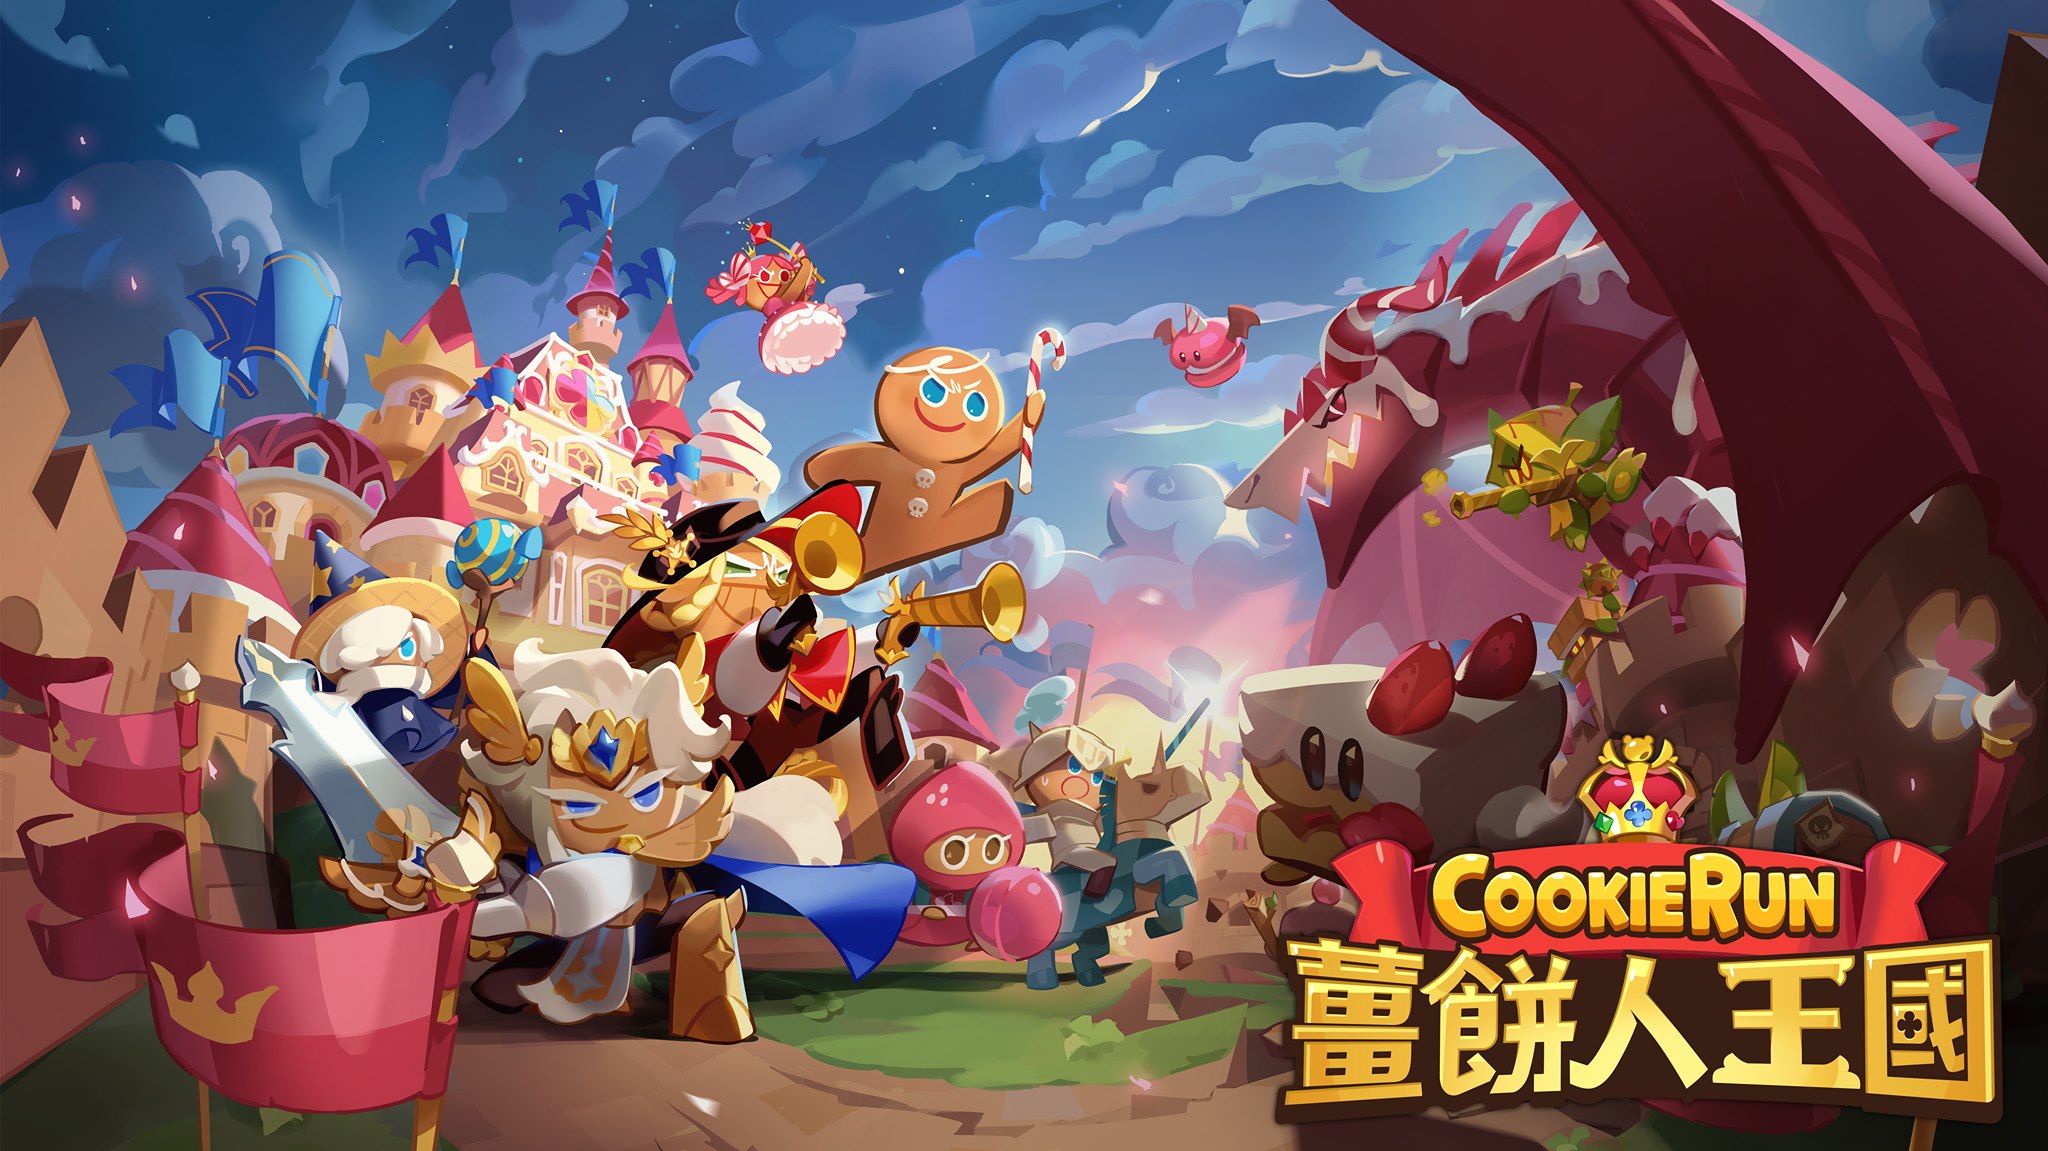 《薑餅人王國》帶你一起尋找英雄餅乾RPG戰隊 12月13日正式上線!